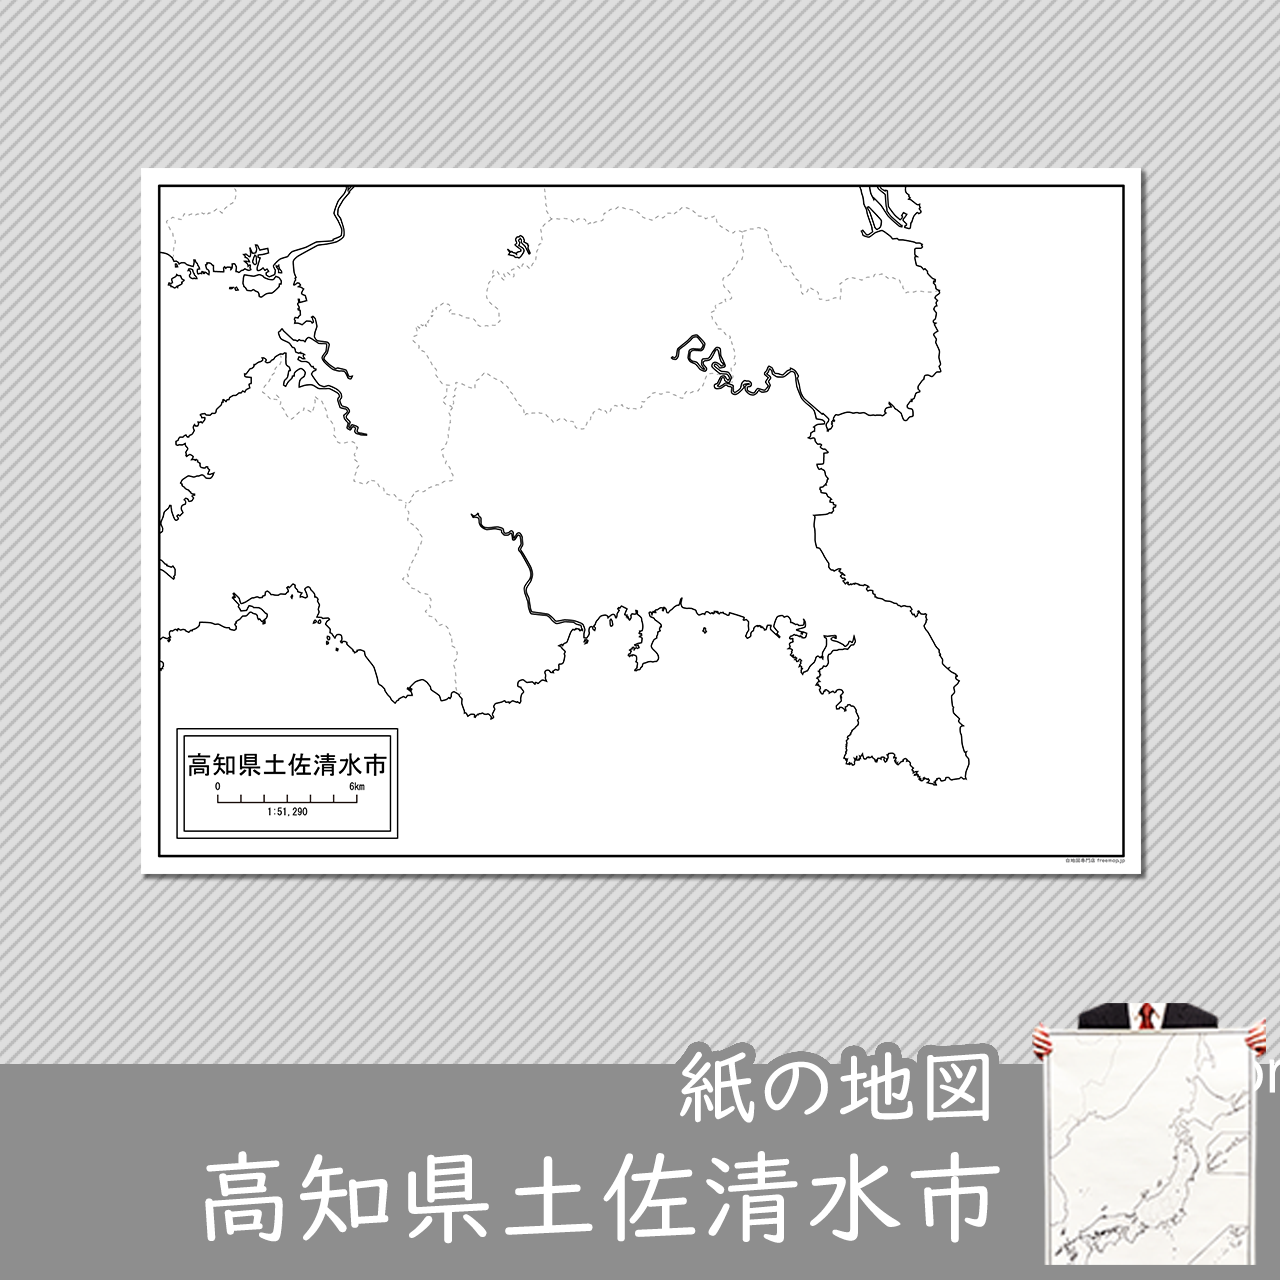 土佐清水市の紙の白地図のサムネイル